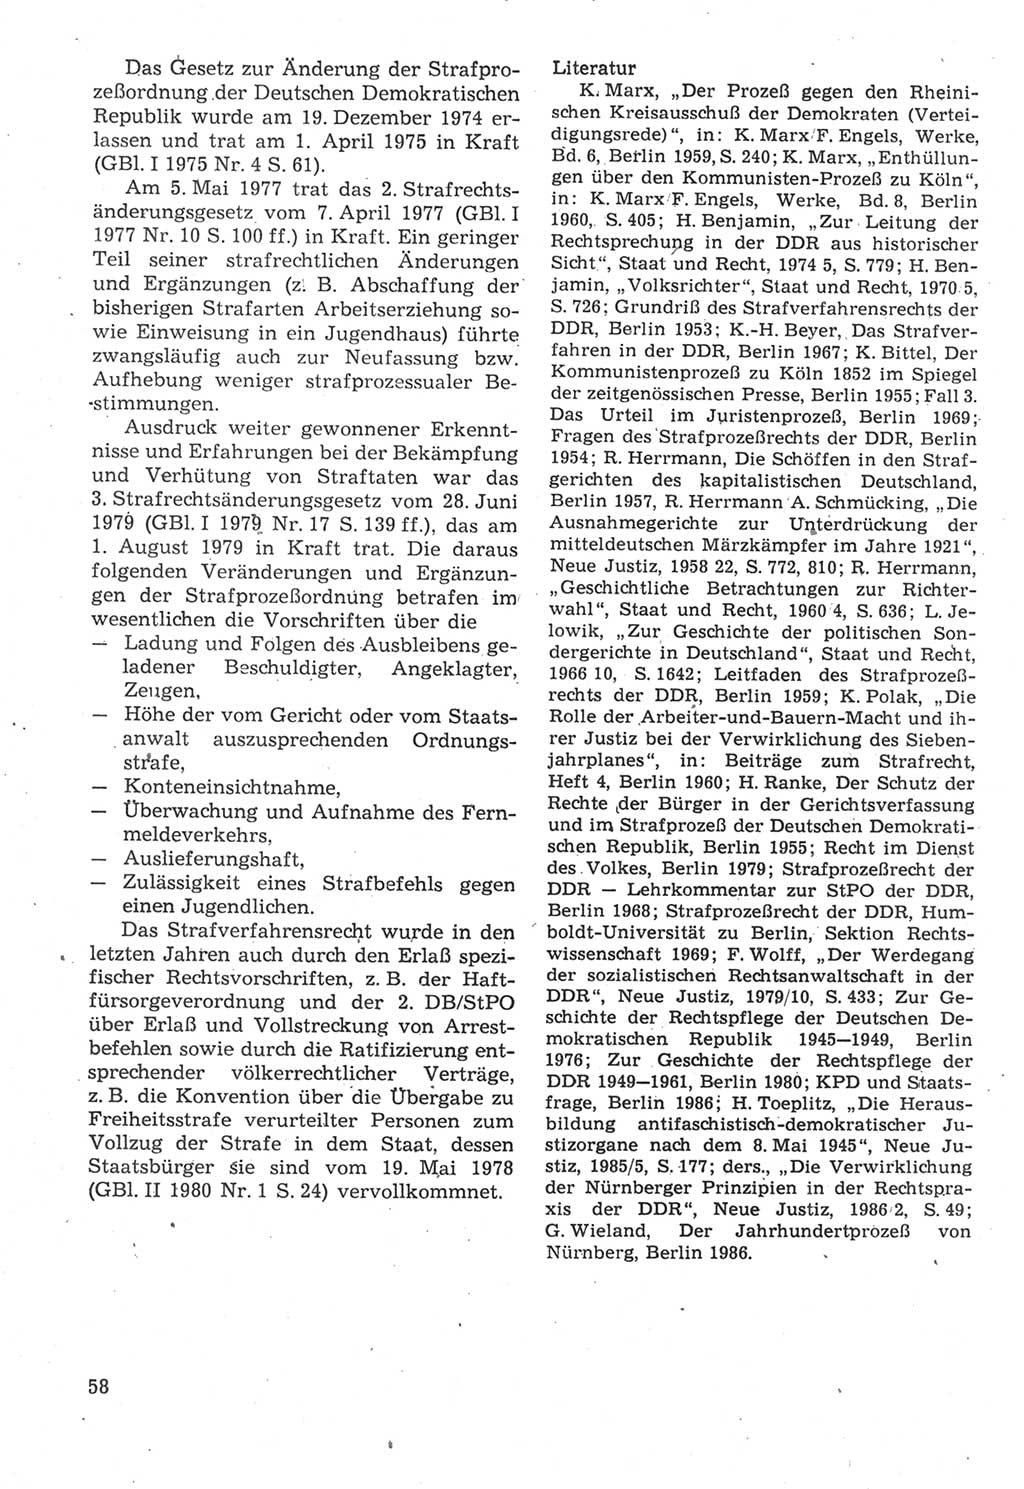 Strafverfahrensrecht [Deutsche Demokratische Republik (DDR)], Lehrbuch 1987, Seite 58 (Strafverf.-R. DDR Lb. 1987, S. 58)